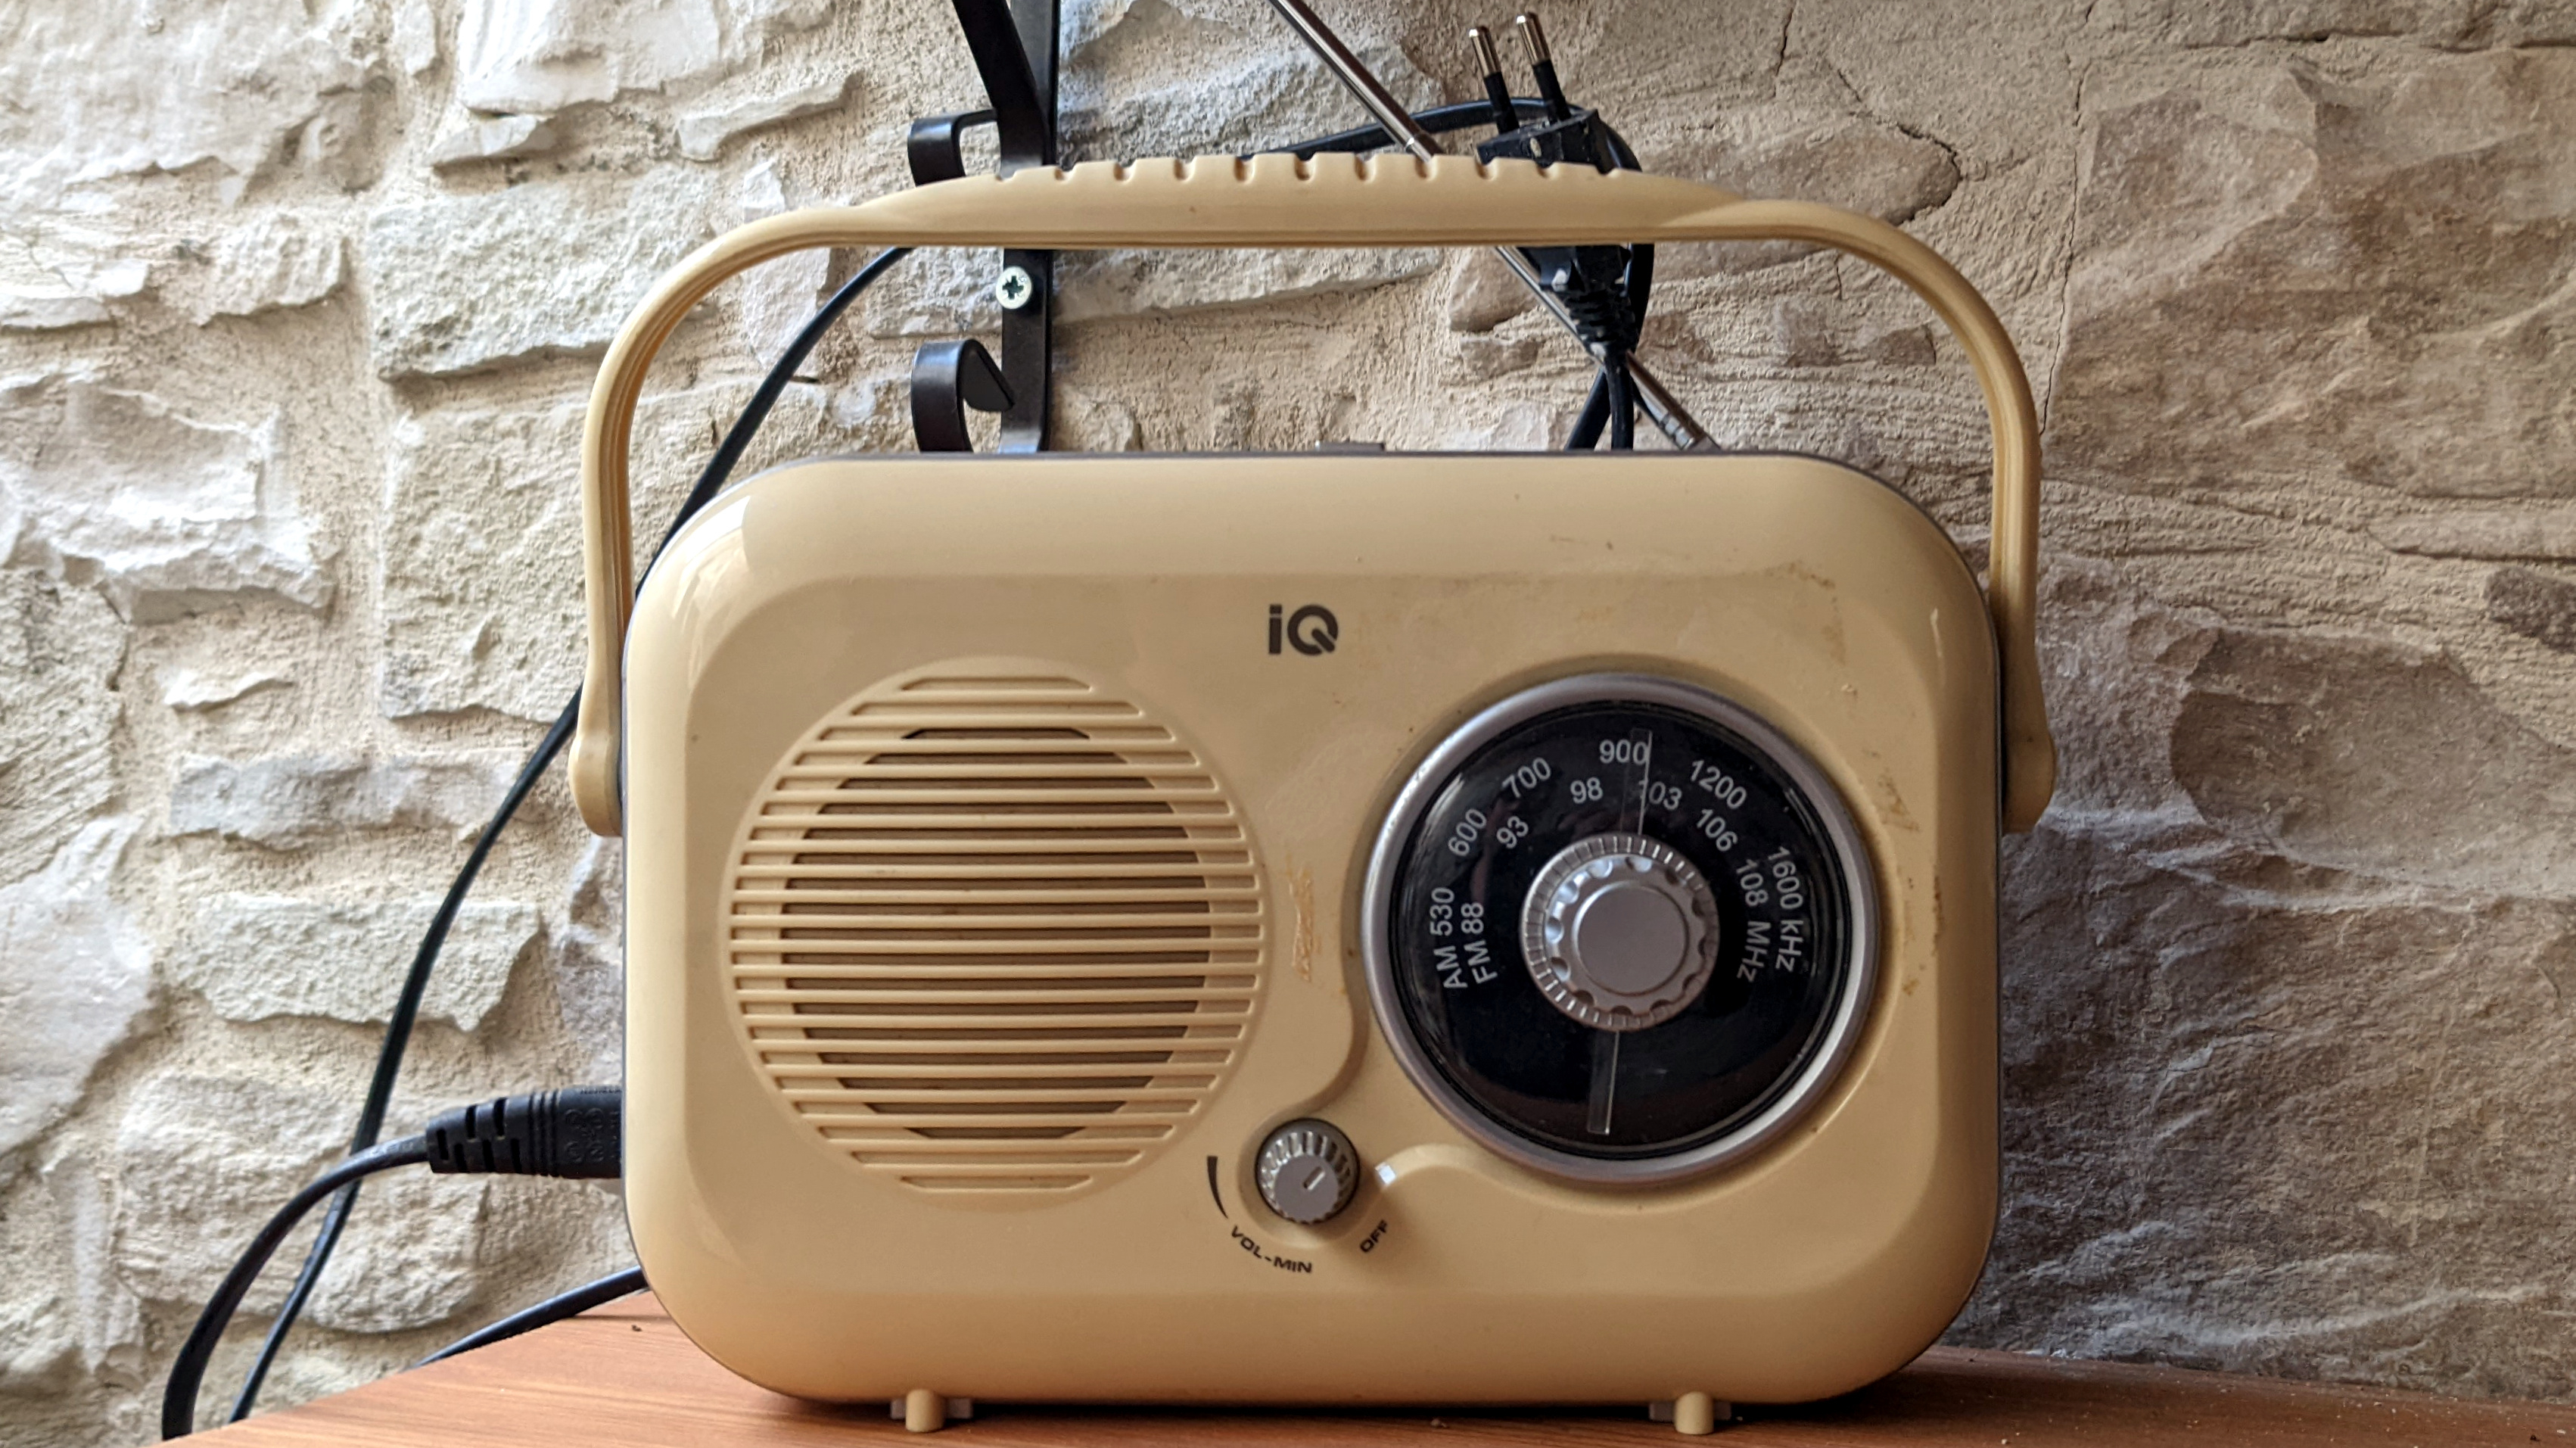 Indien verlangt UKW-Radios in allen Handys | heise online